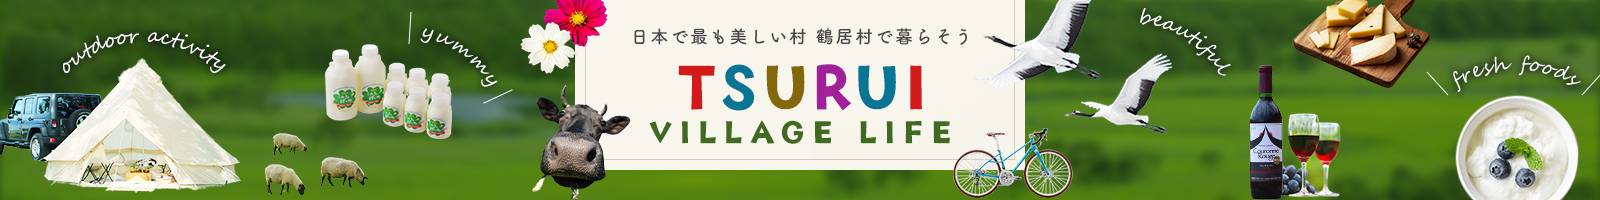 日本で最も美しい村鶴居村で暮らそうTSURUI VILLAGE LIFE